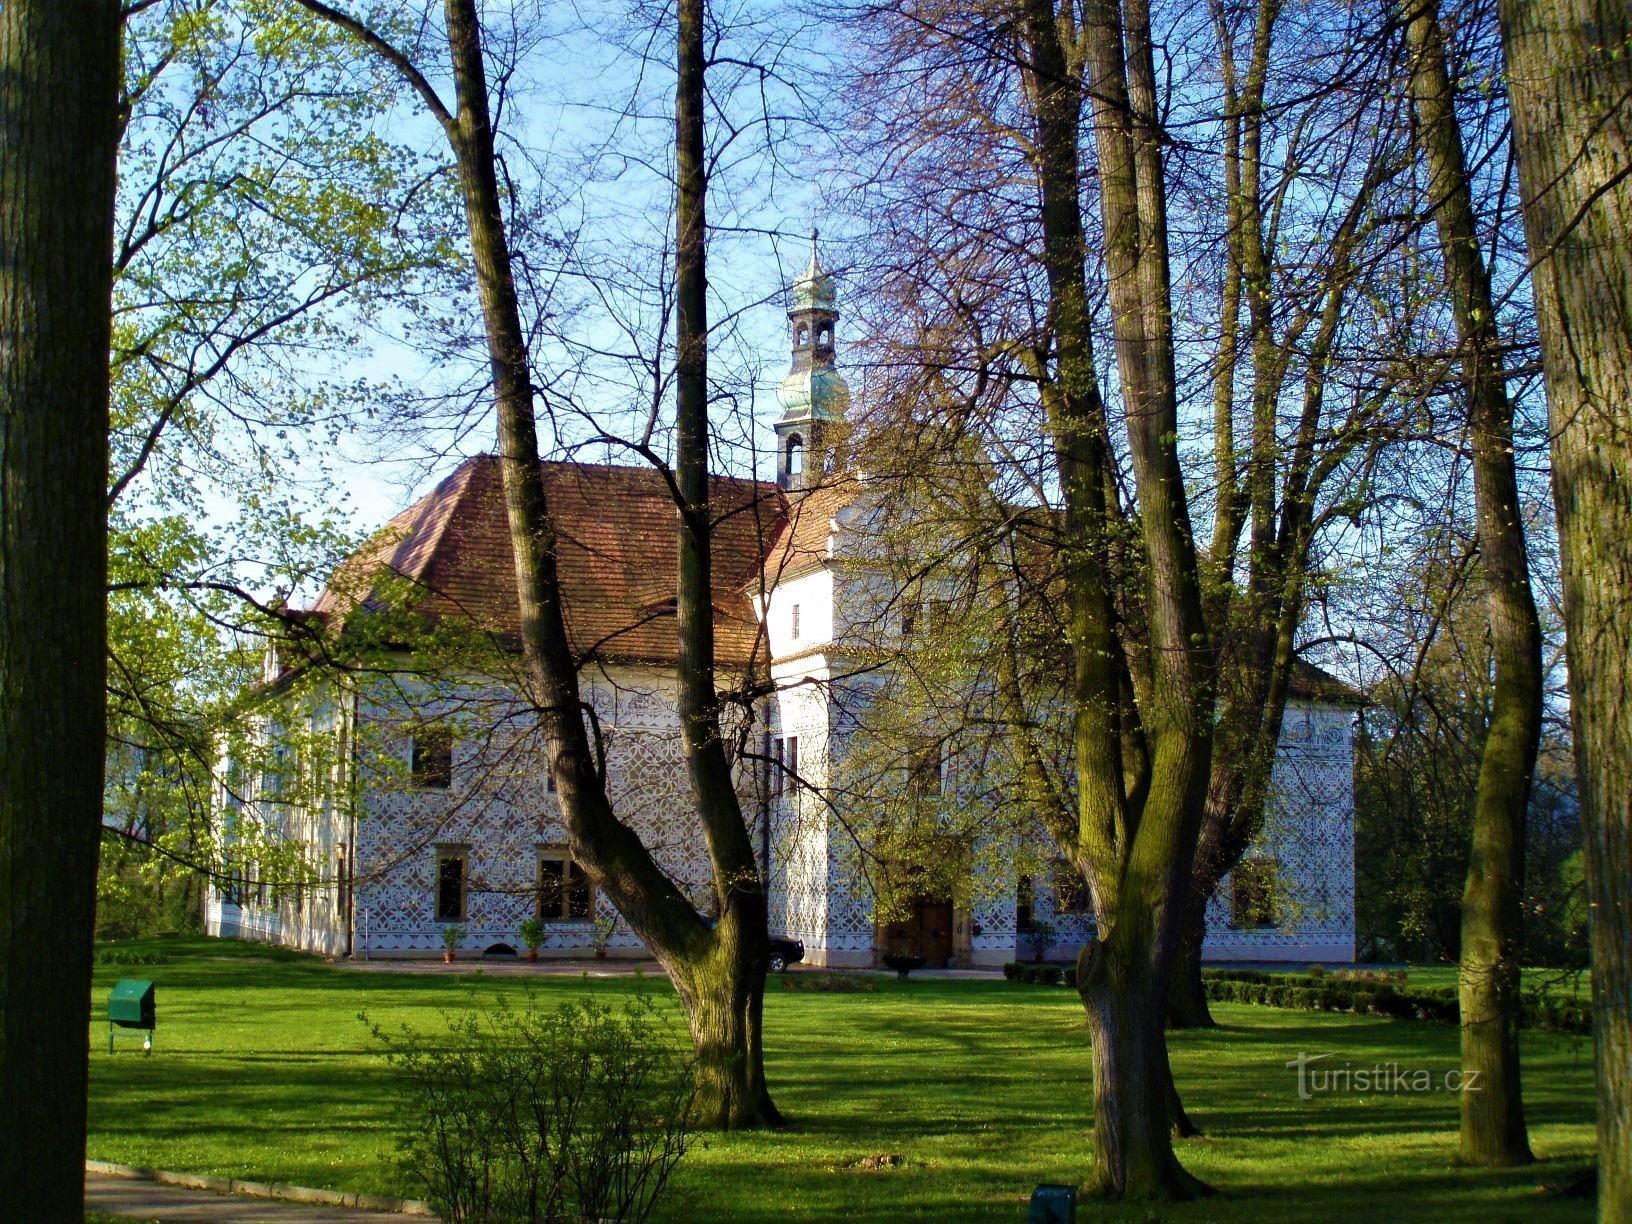 Castle (Doudleby nad Orlicí, 15.4.2009)